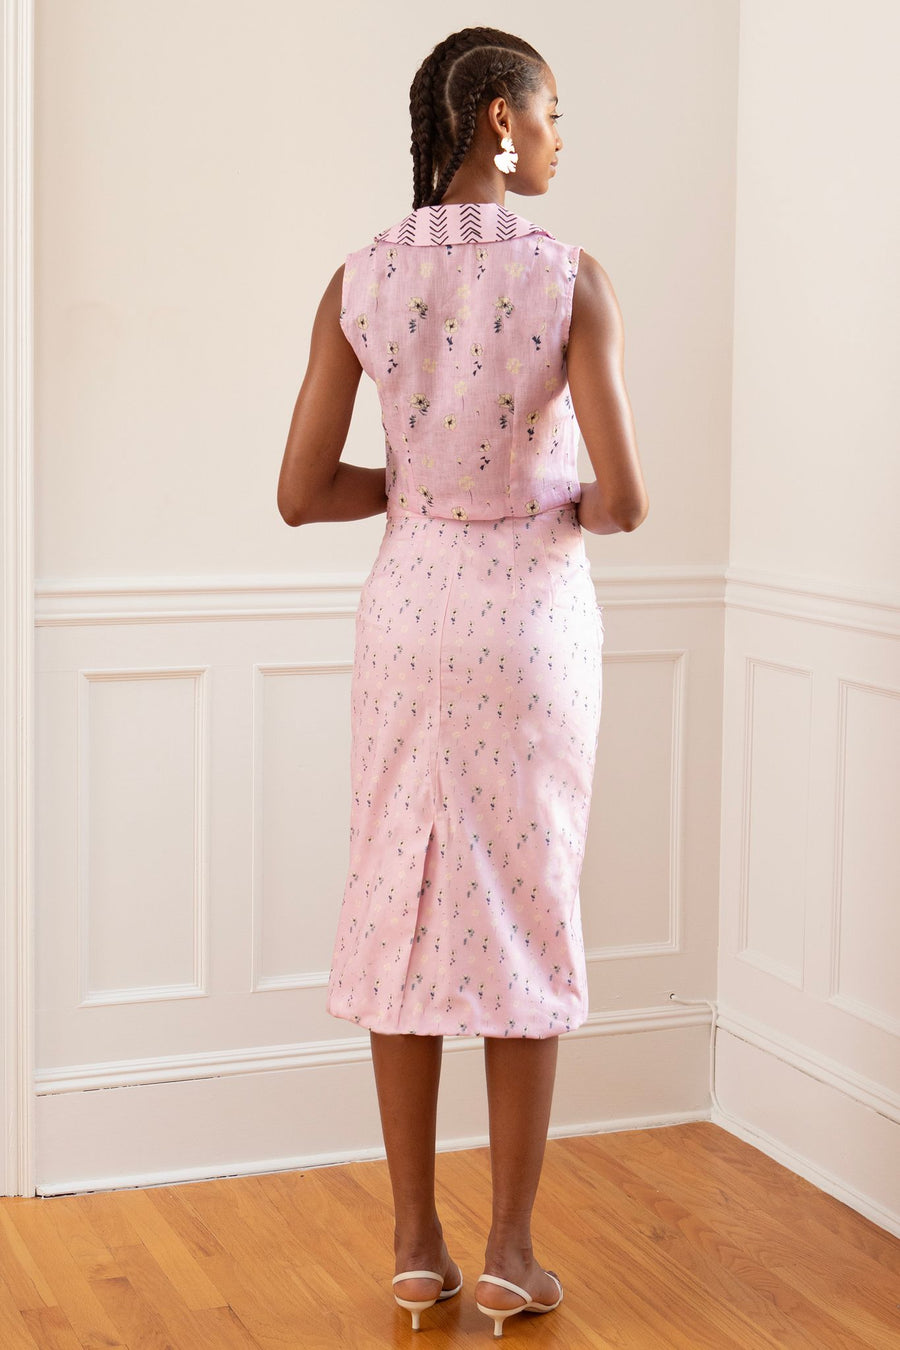 Mila Skirt  - Marker Flower Pink/ Cream in Oxford Cotton